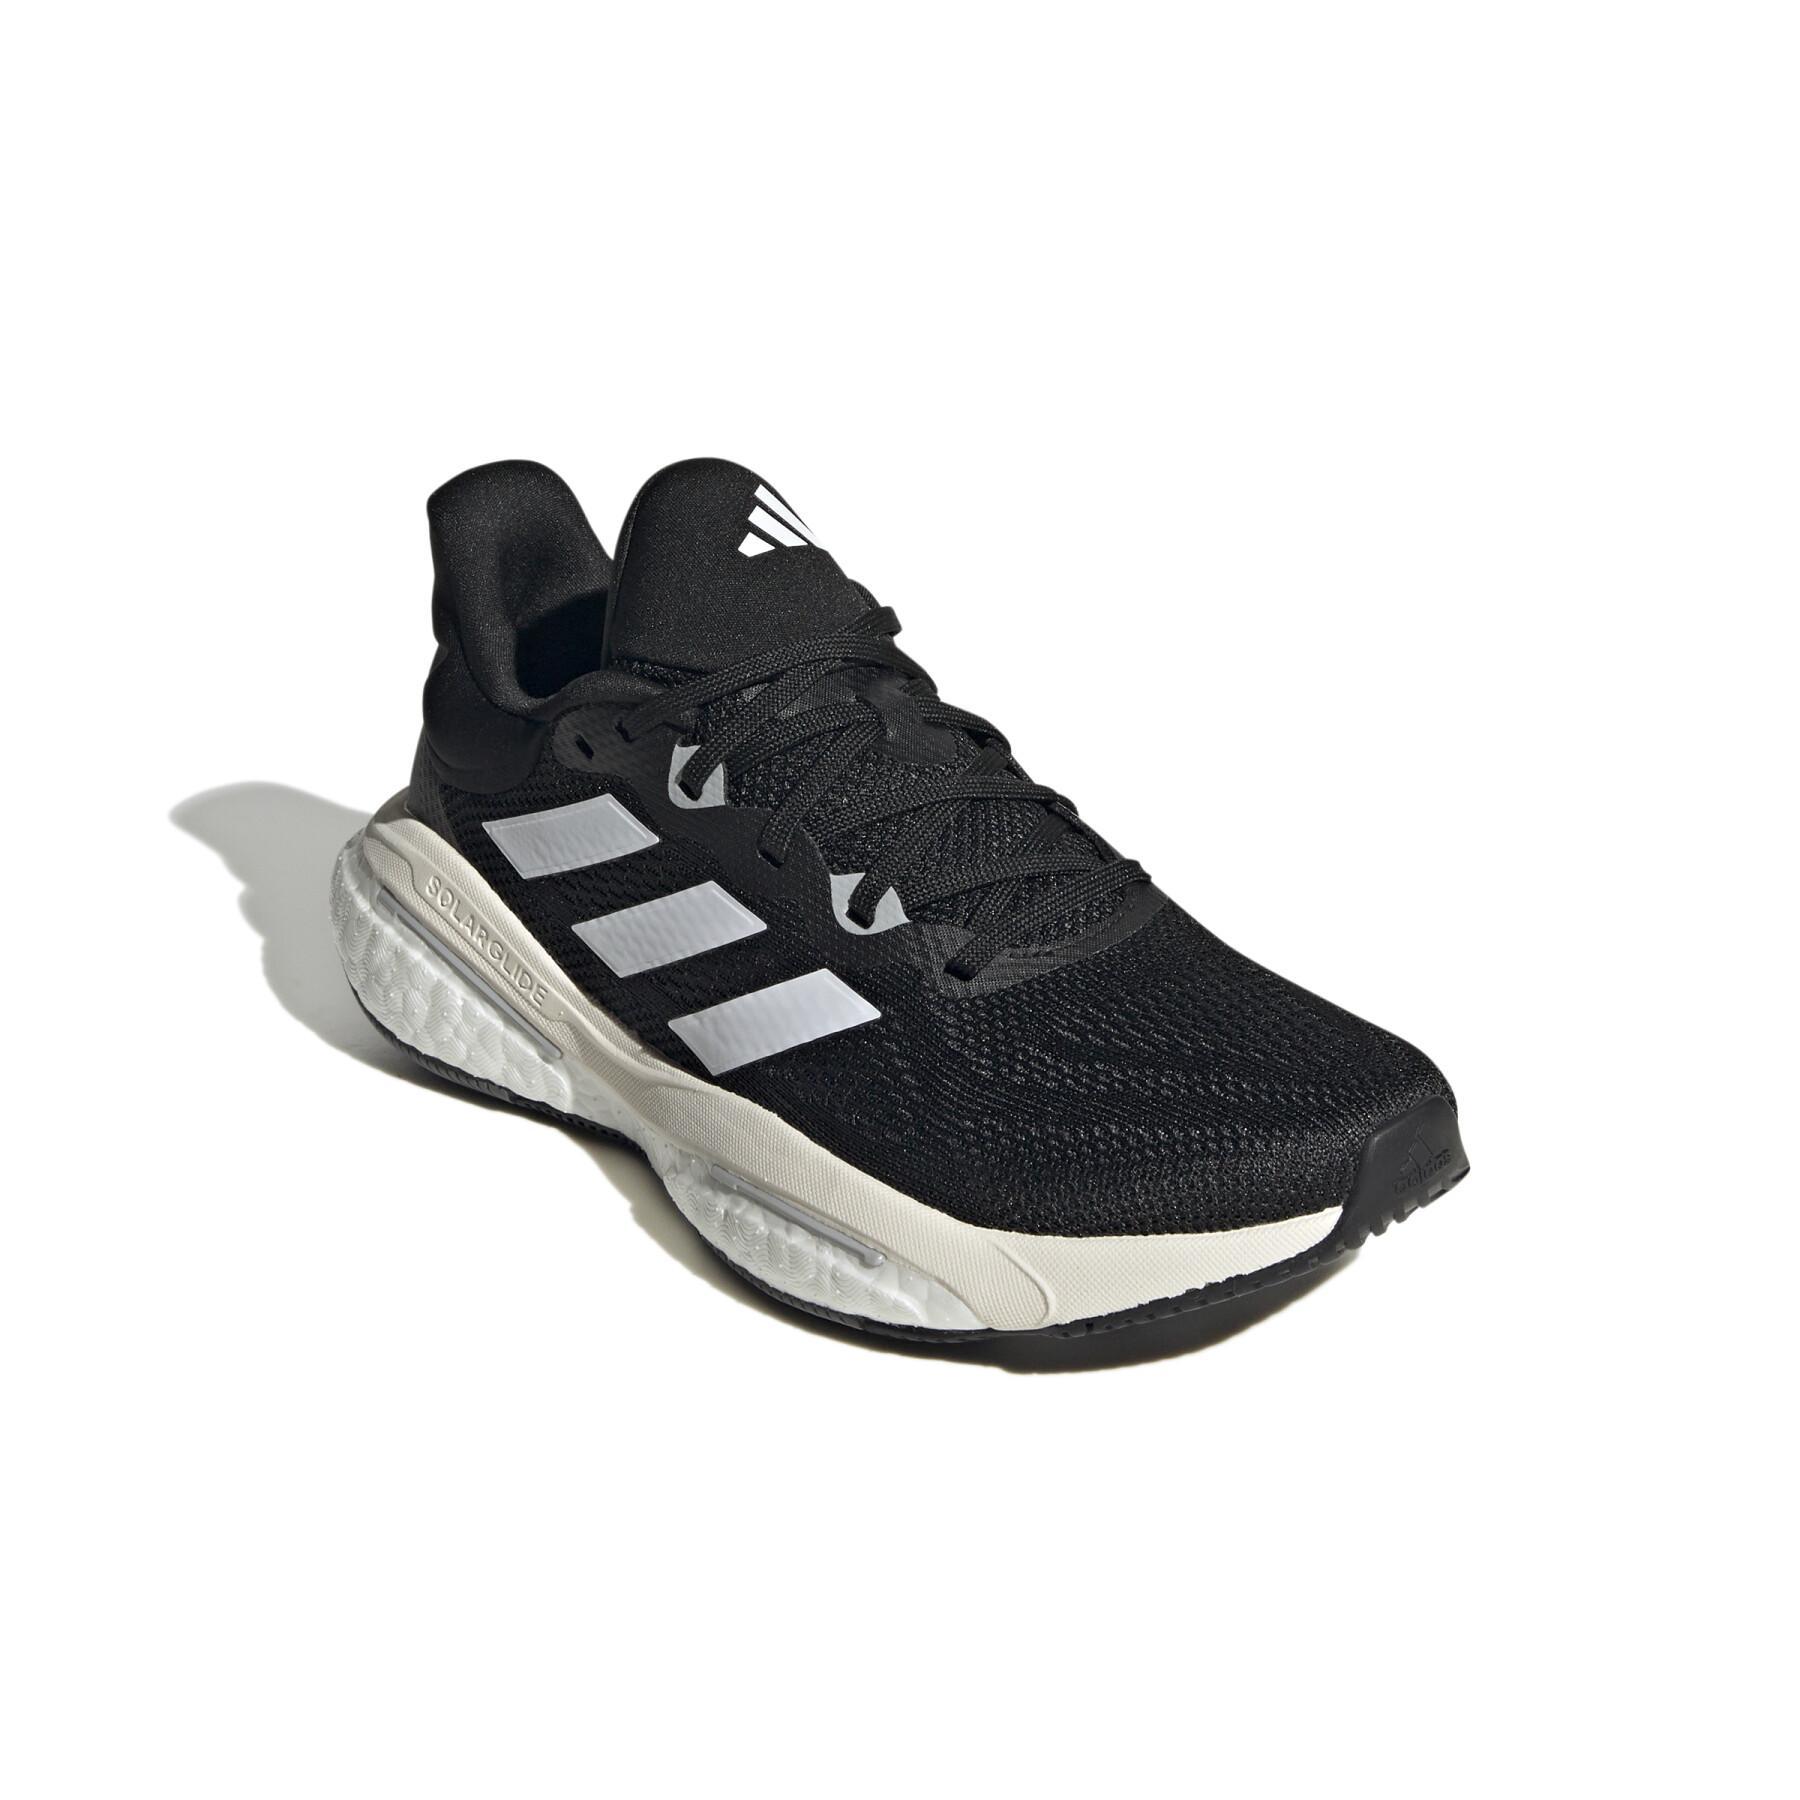 Chaussures de running femme adidas Solarglide 6